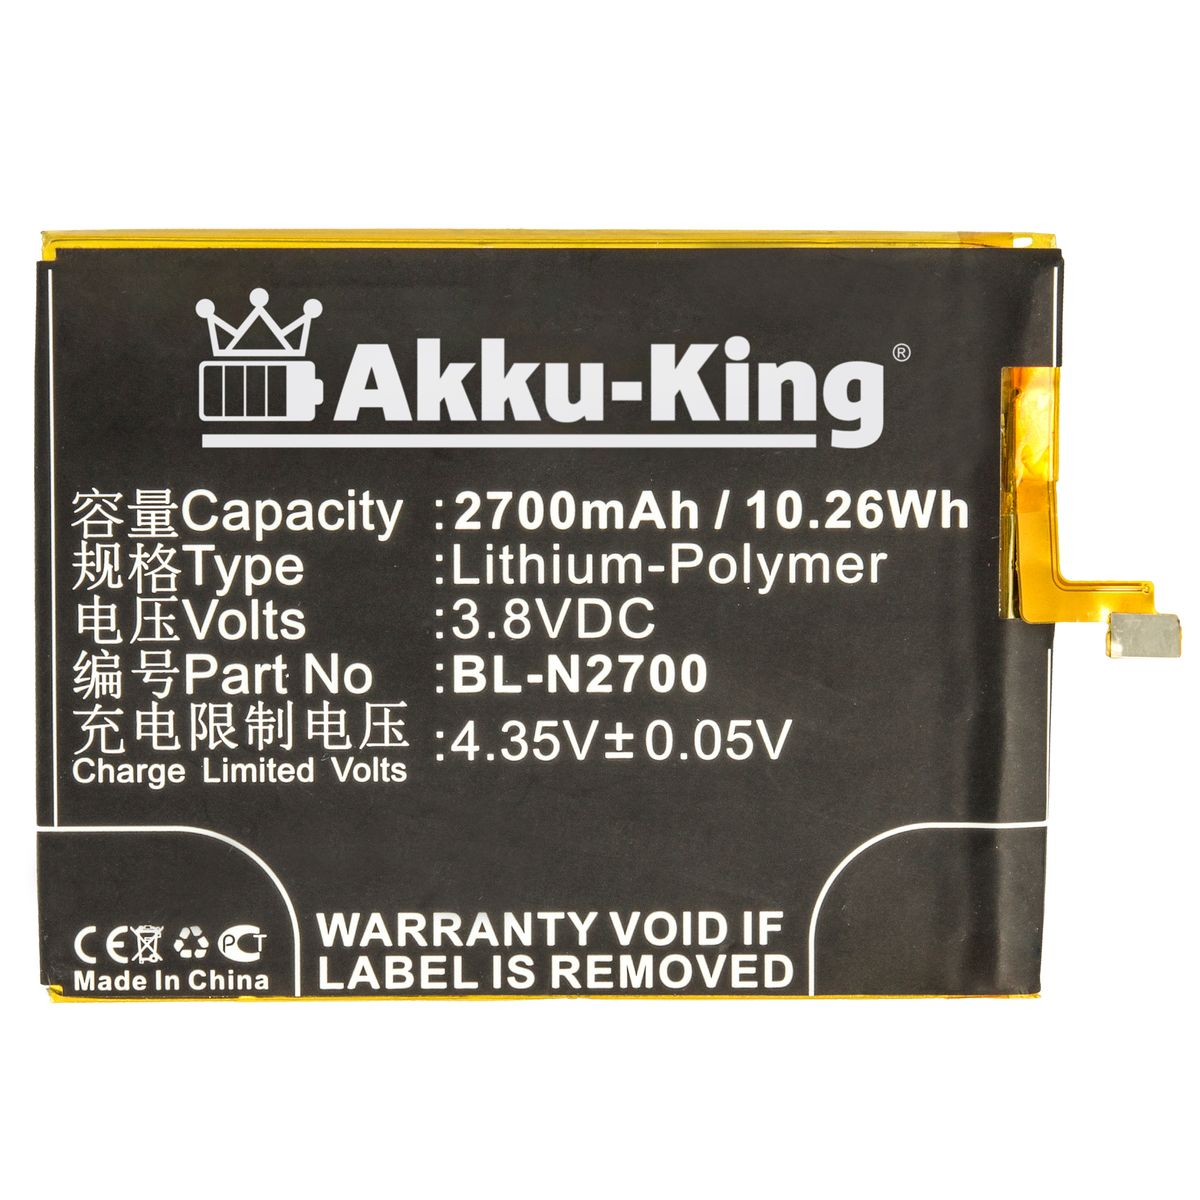 AKKU-KING Akku BL-N2700 Handy-Akku, kompatibel 3.8 Volt, Kazam 2700mAh mit Li-Polymer